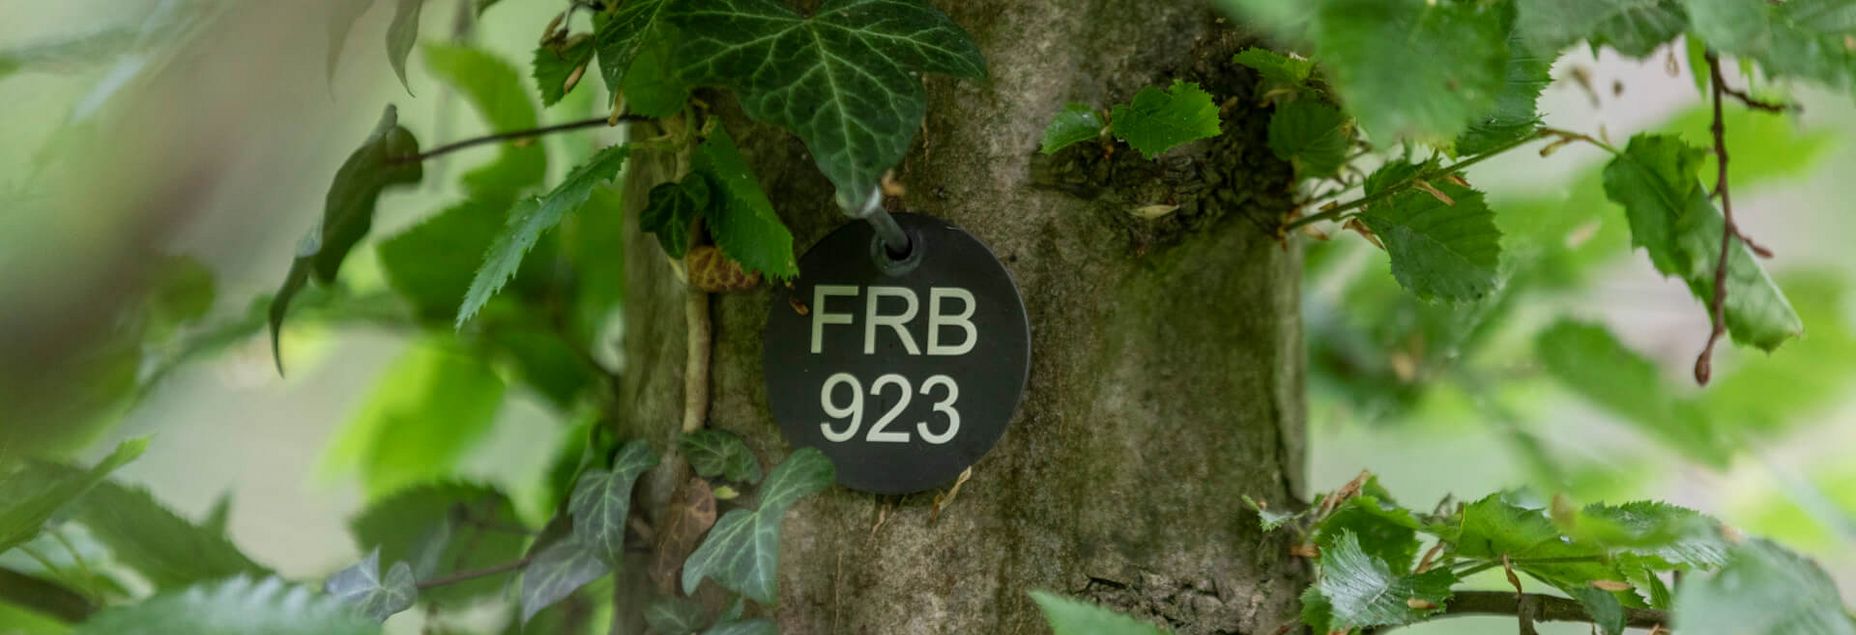 FRB 923 - Plakette